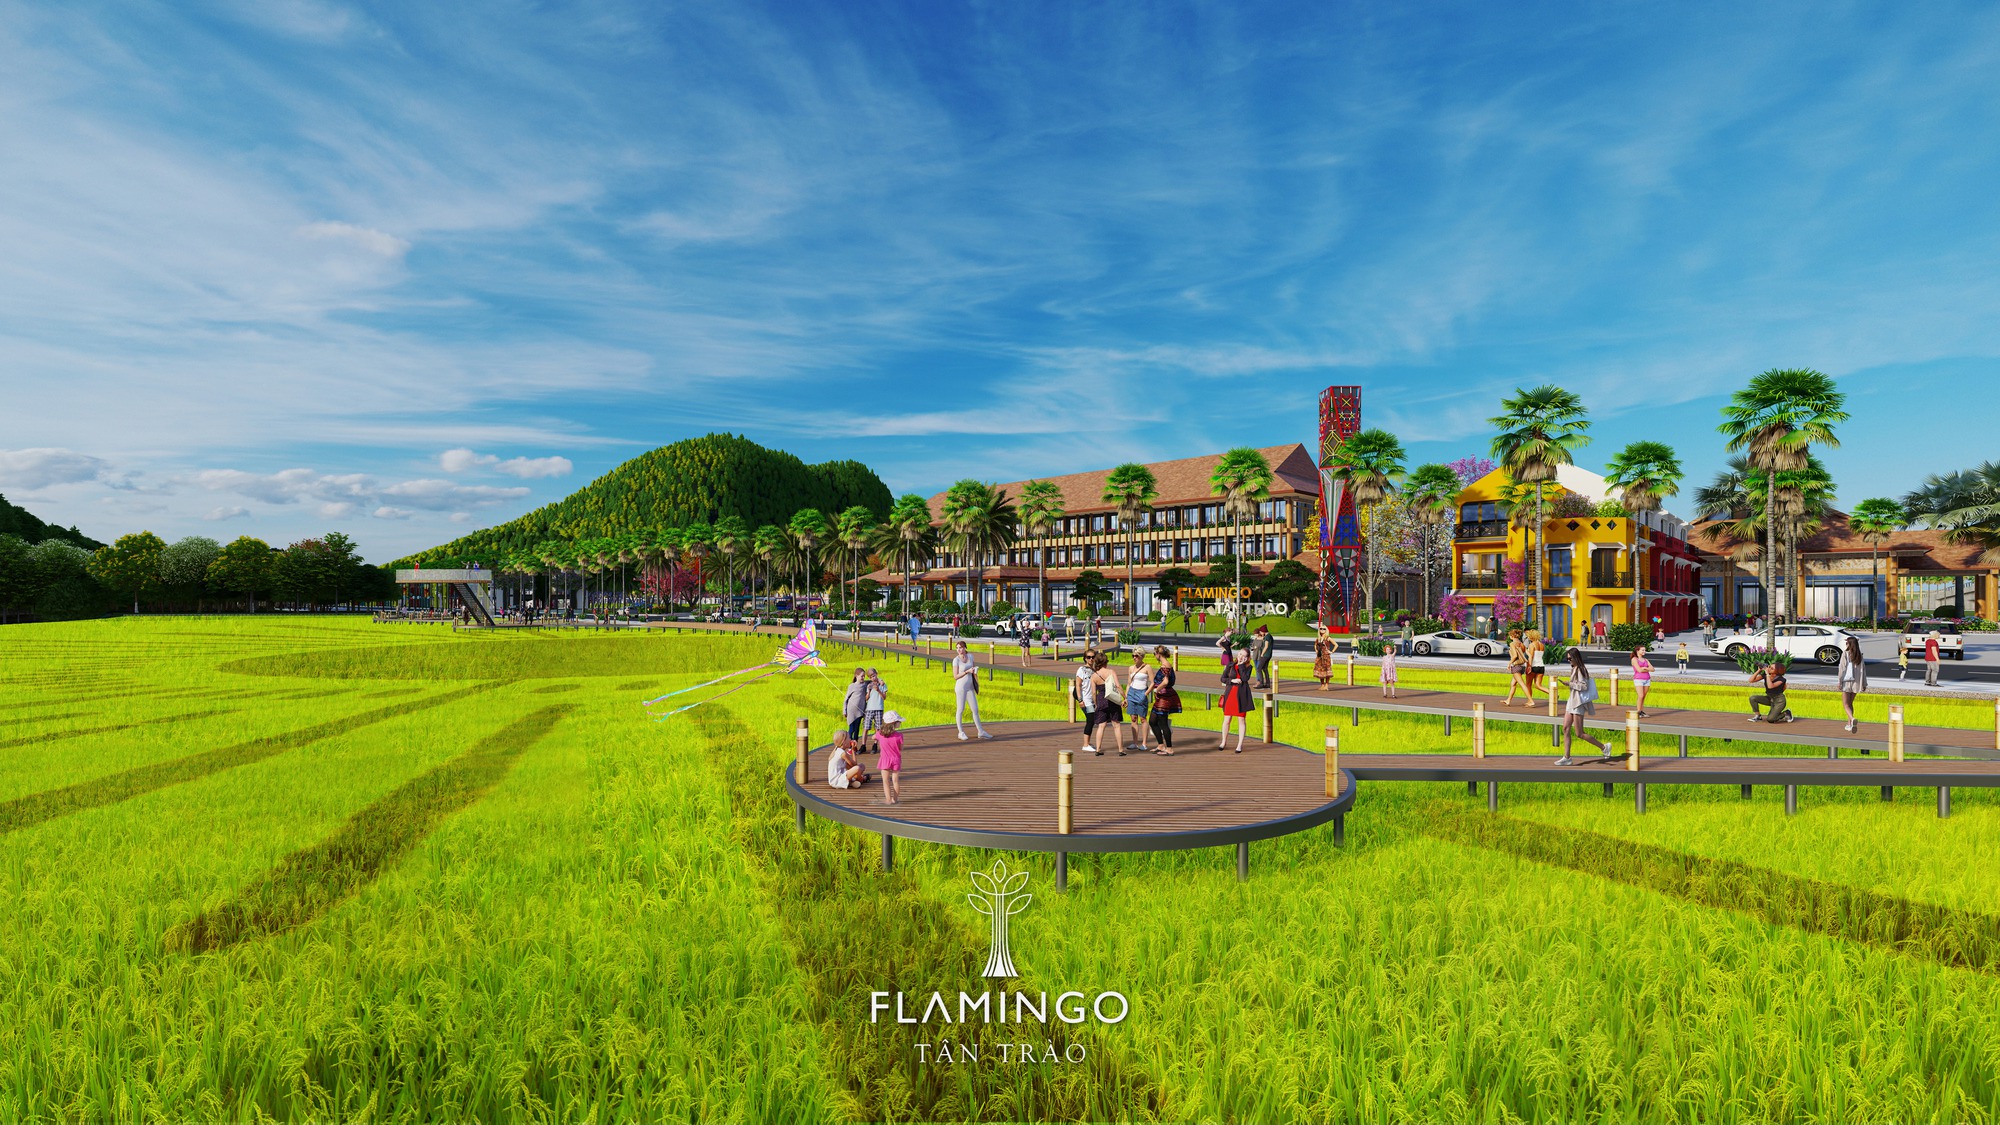 Flamingo Tân Trào: 03 lợi thế thu hút du khách và nhà đầu tư - Ảnh 1.